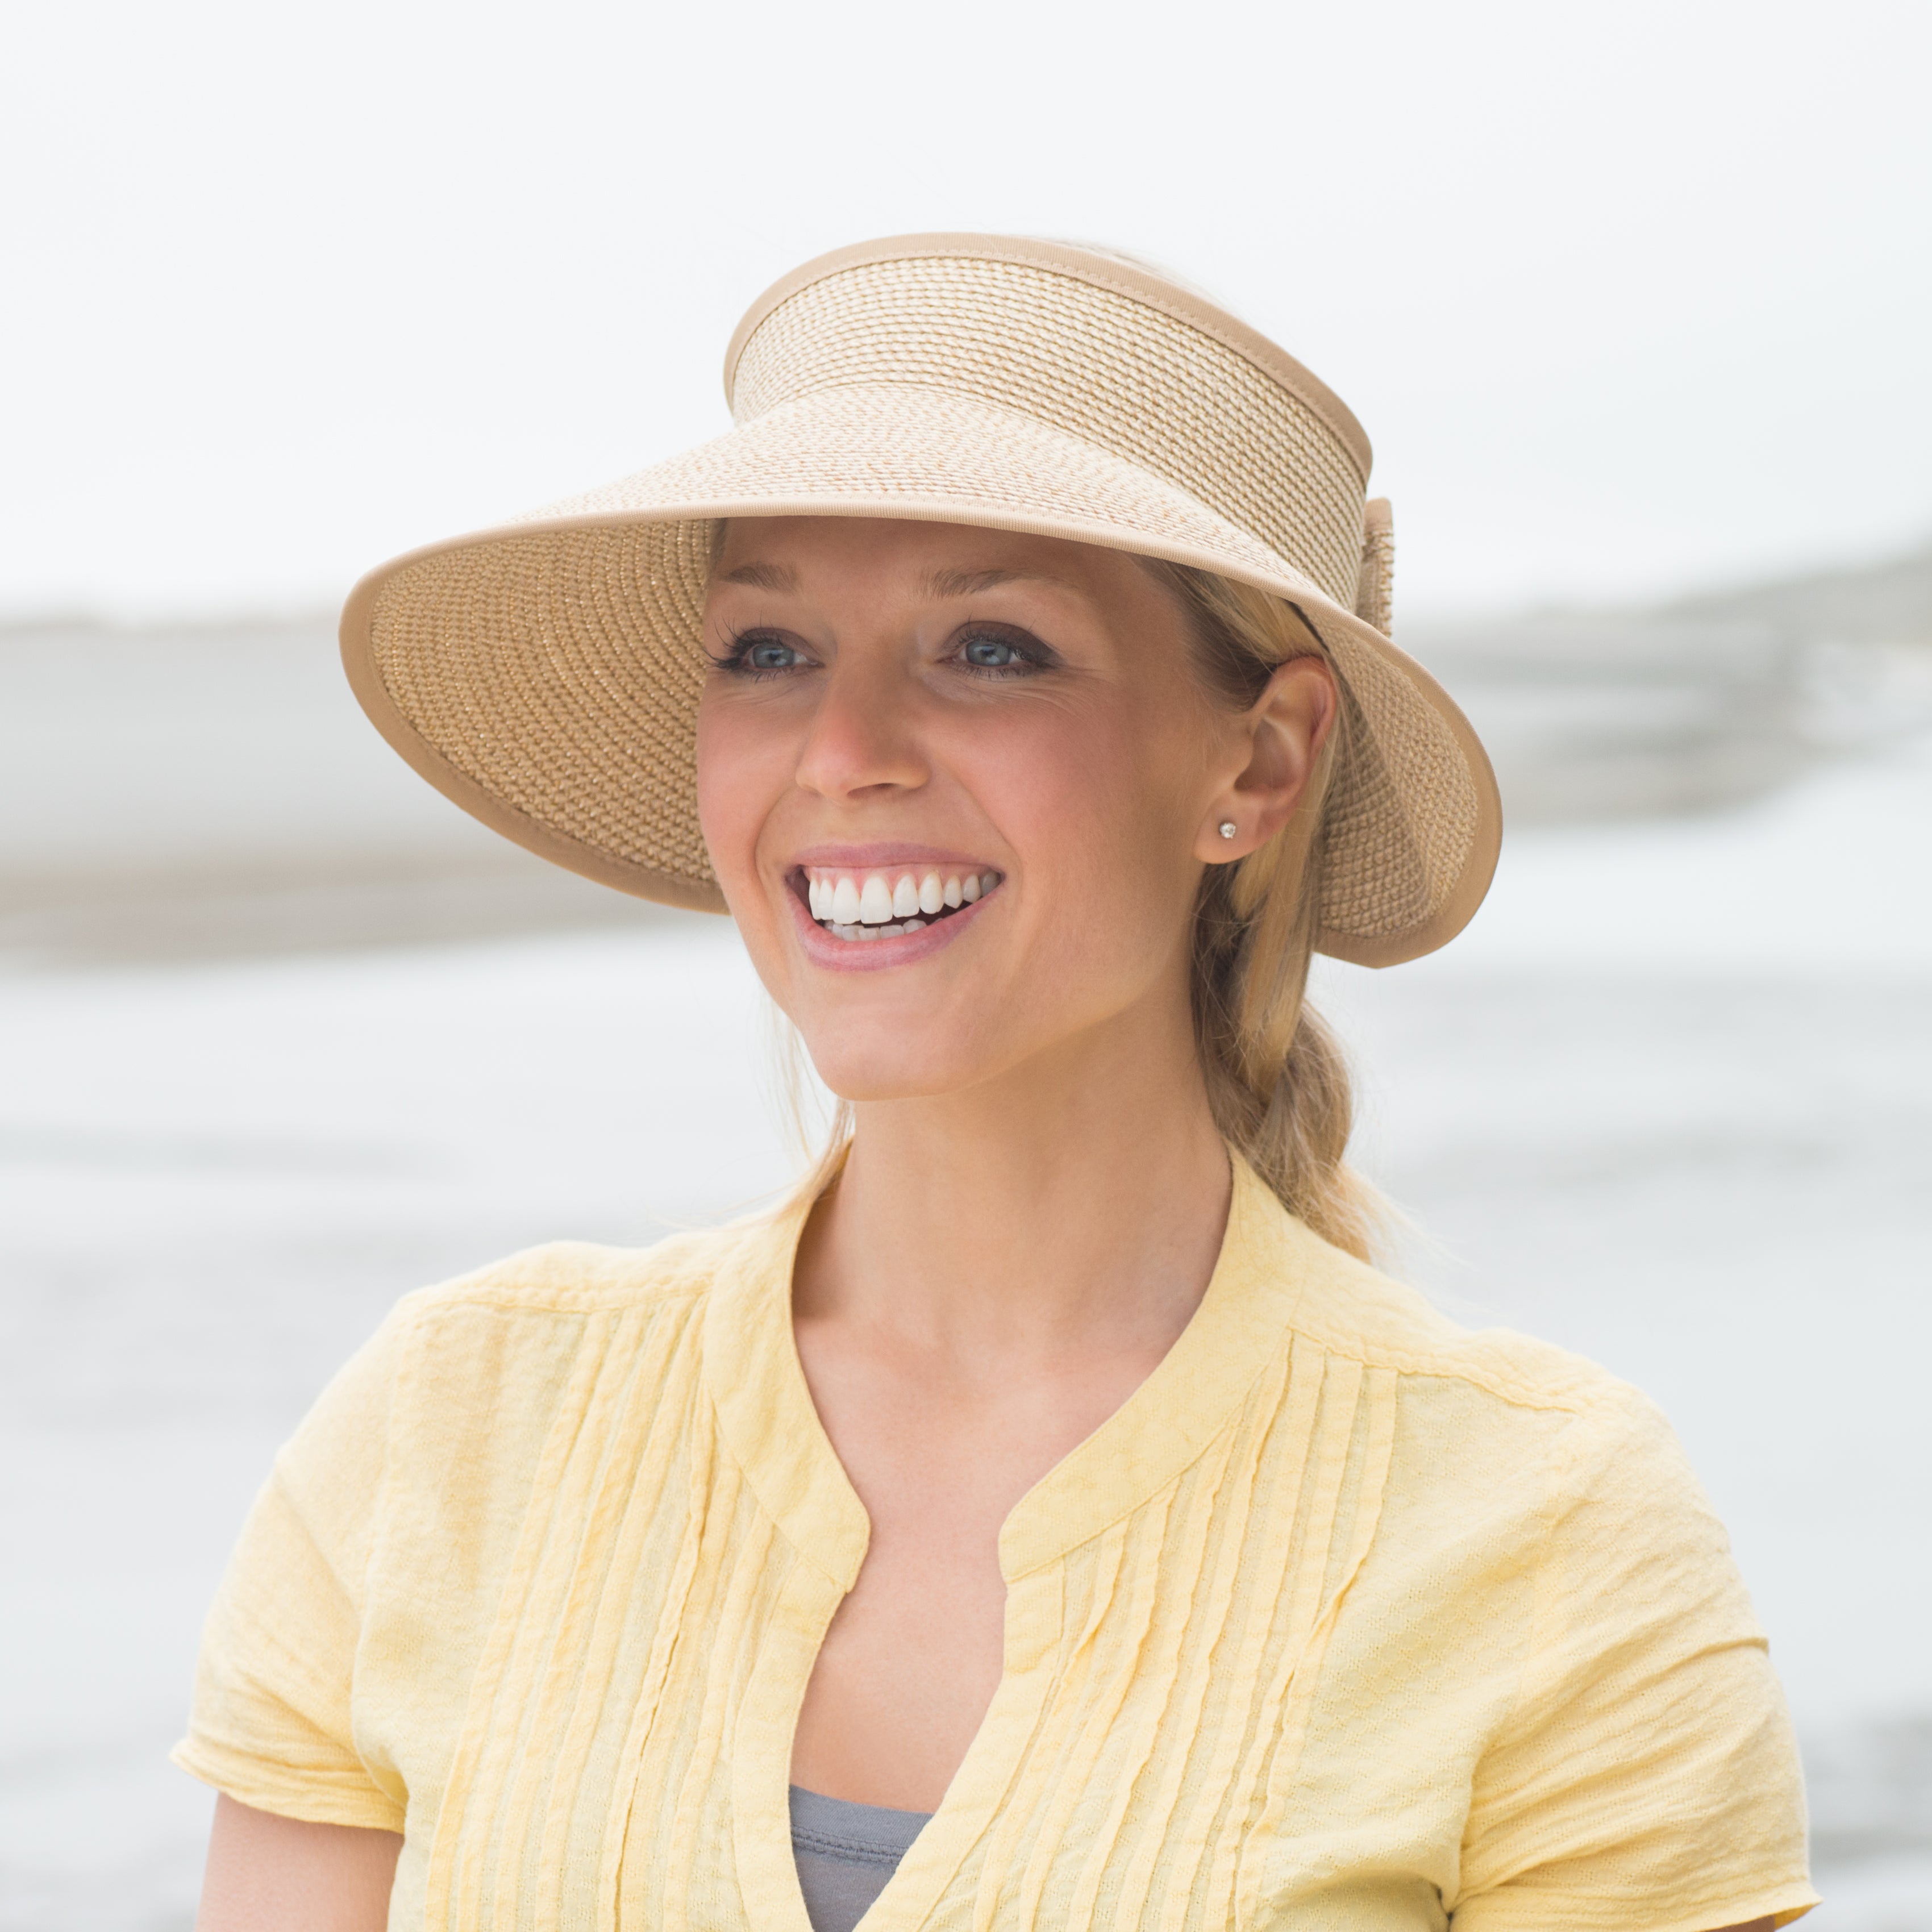 Woman on beach with sun visor